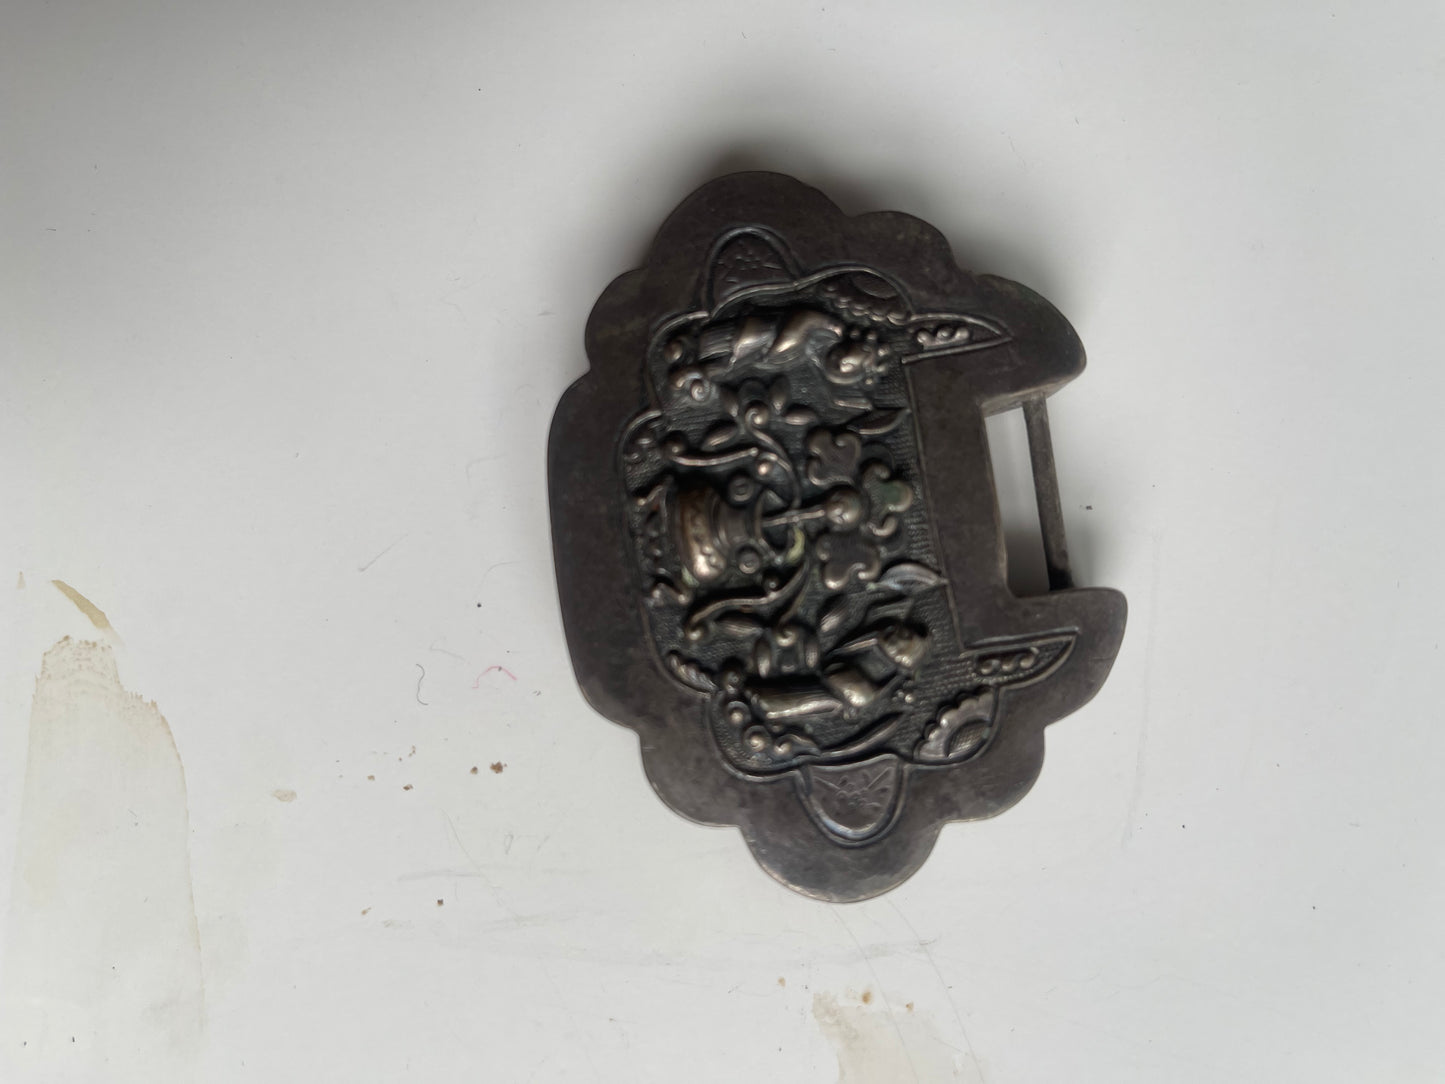 An antique Mongolian silver spirit lock